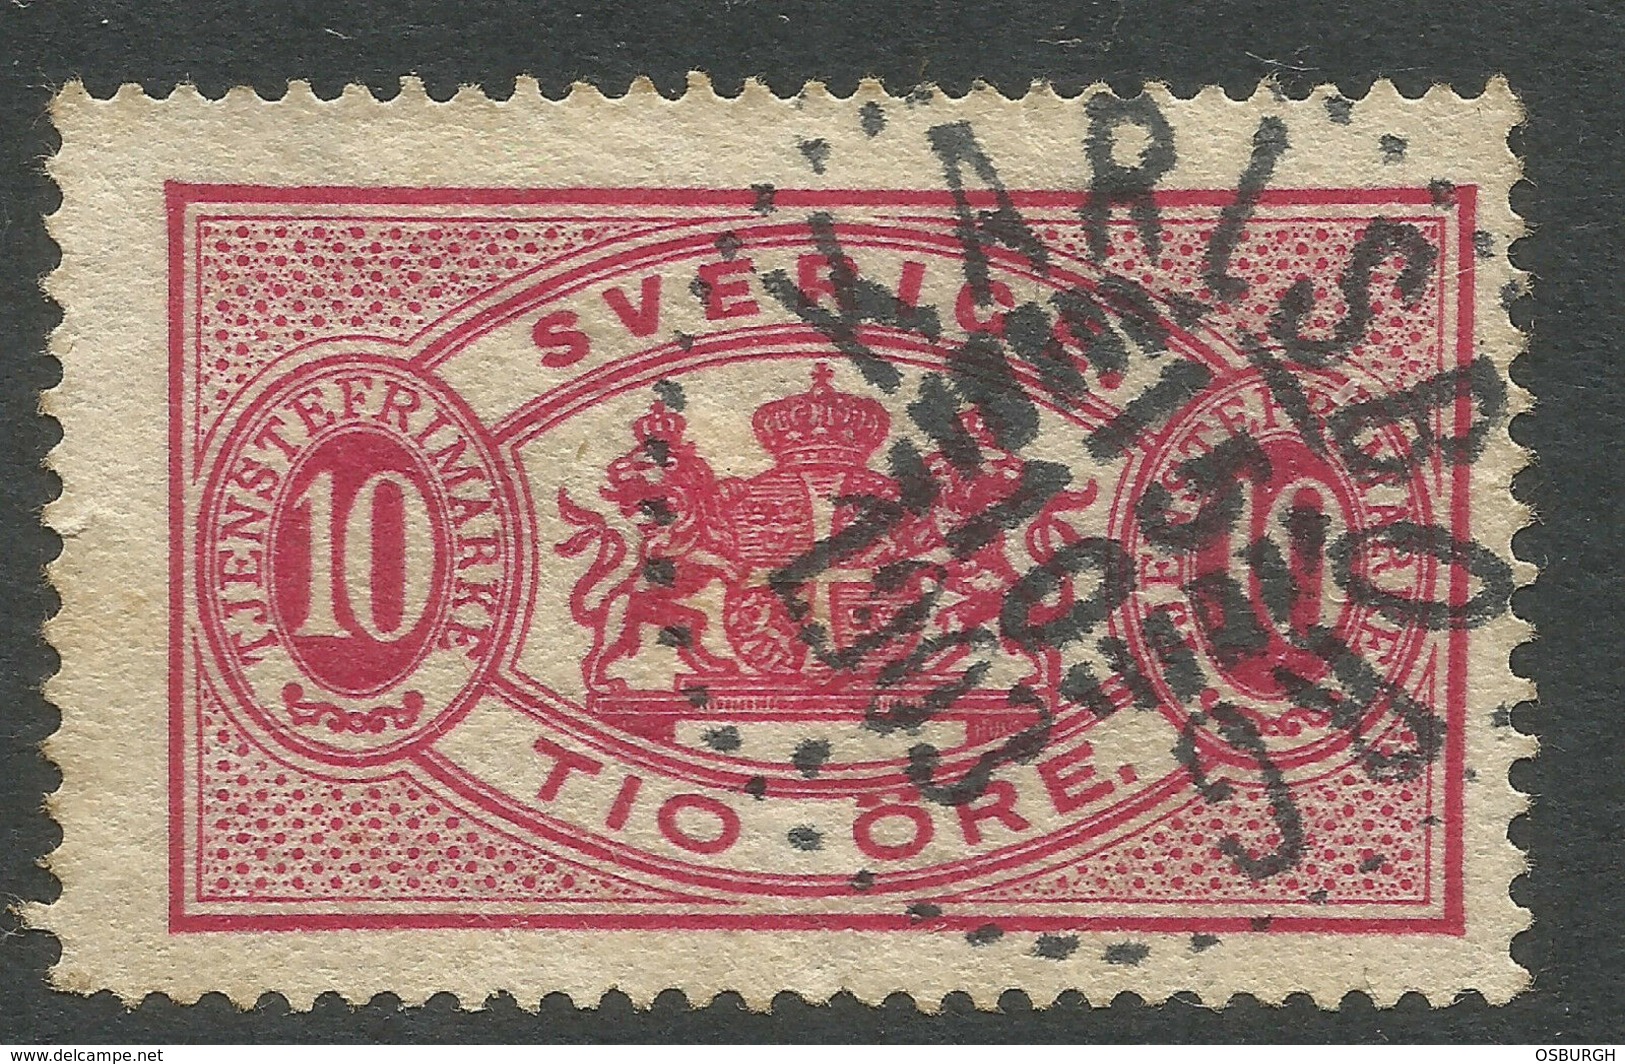 SWEDEN. 1874. 10o OFFICIAL. KARLSBORG POSTMARK. USED. - Used Stamps